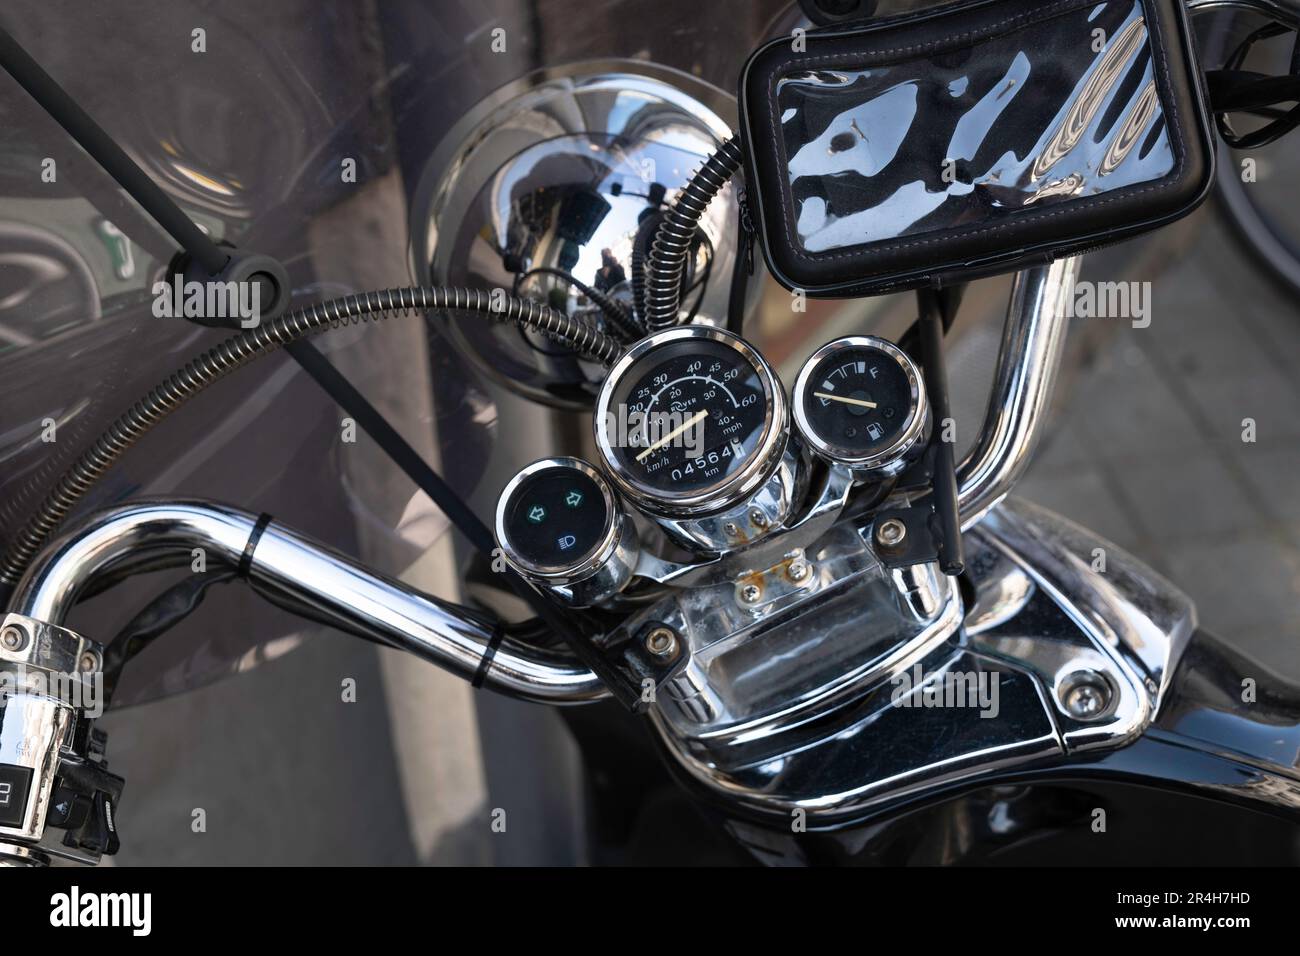 Motocicletta classica con orologi lucidi, volante, copertura telefono e altri dettagli. Vista dall'alto, concentrarsi sul tachimetro Foto Stock